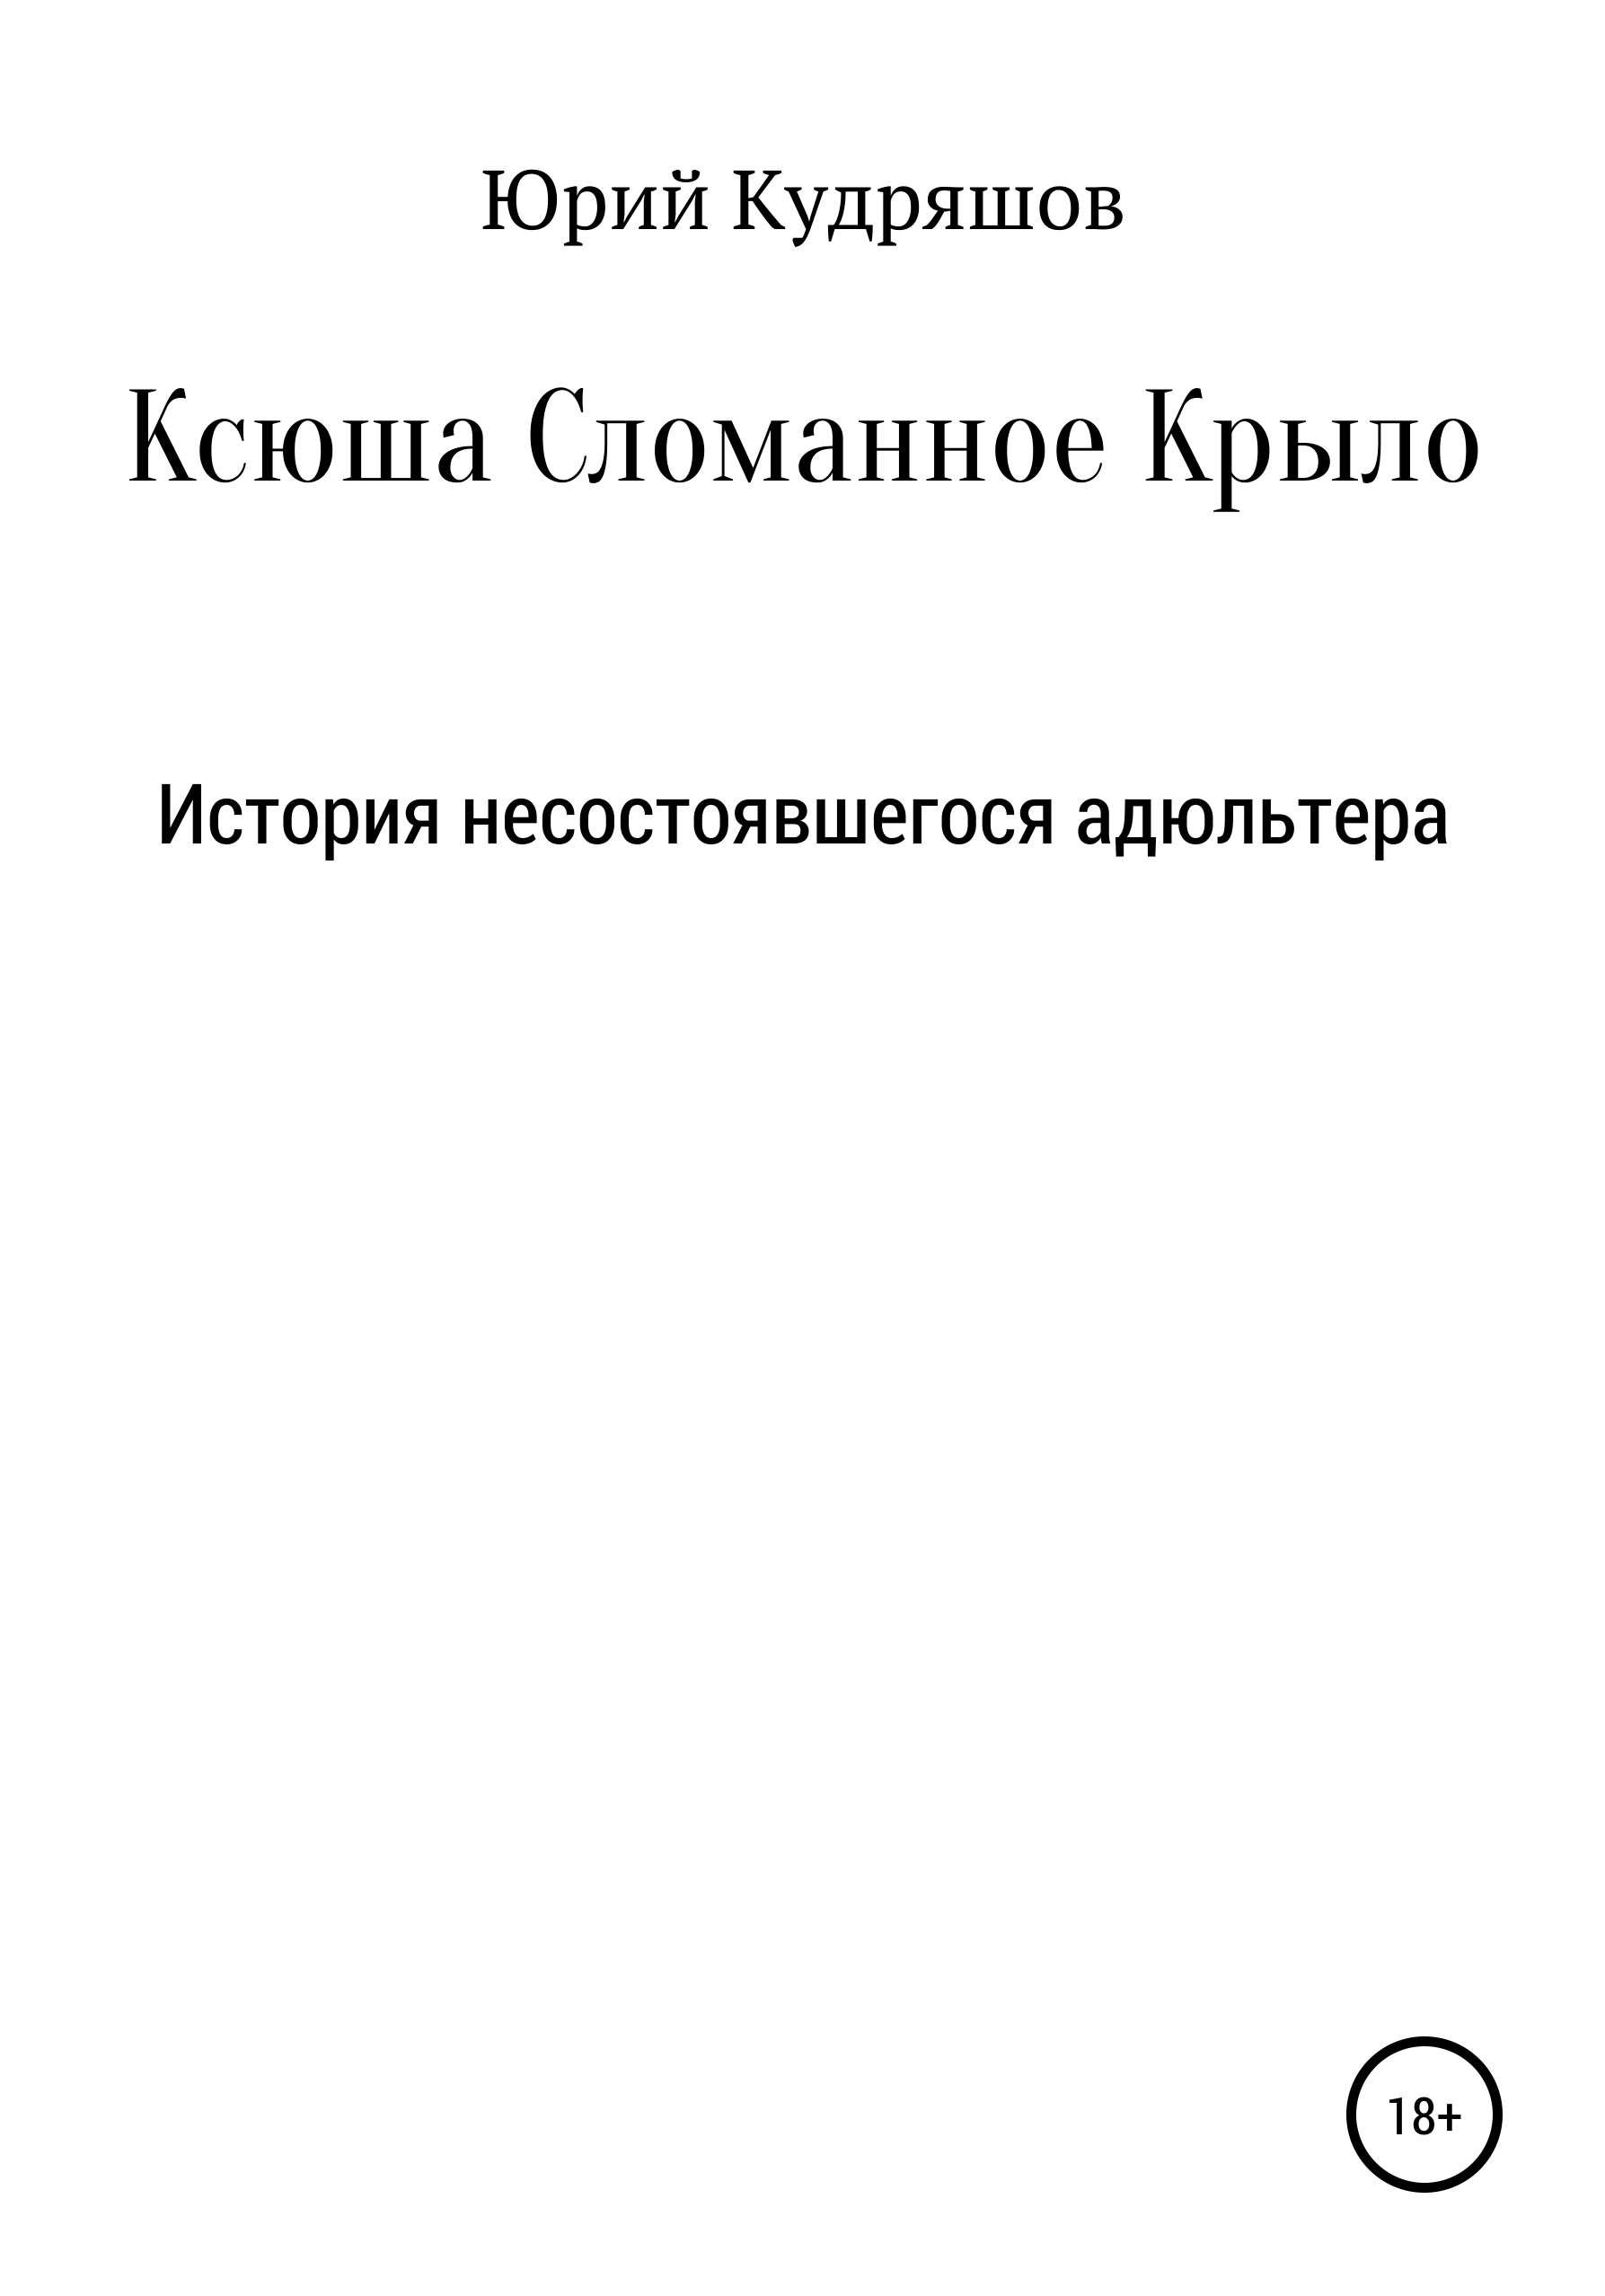 Книга Ксюша Сломанное Крыло из серии , созданная Юрий Кудряшов, может относится к жанру Современная русская литература, Психотерапия и консультирование. Стоимость электронной книги Ксюша Сломанное Крыло с идентификатором 29408745 составляет 0 руб.